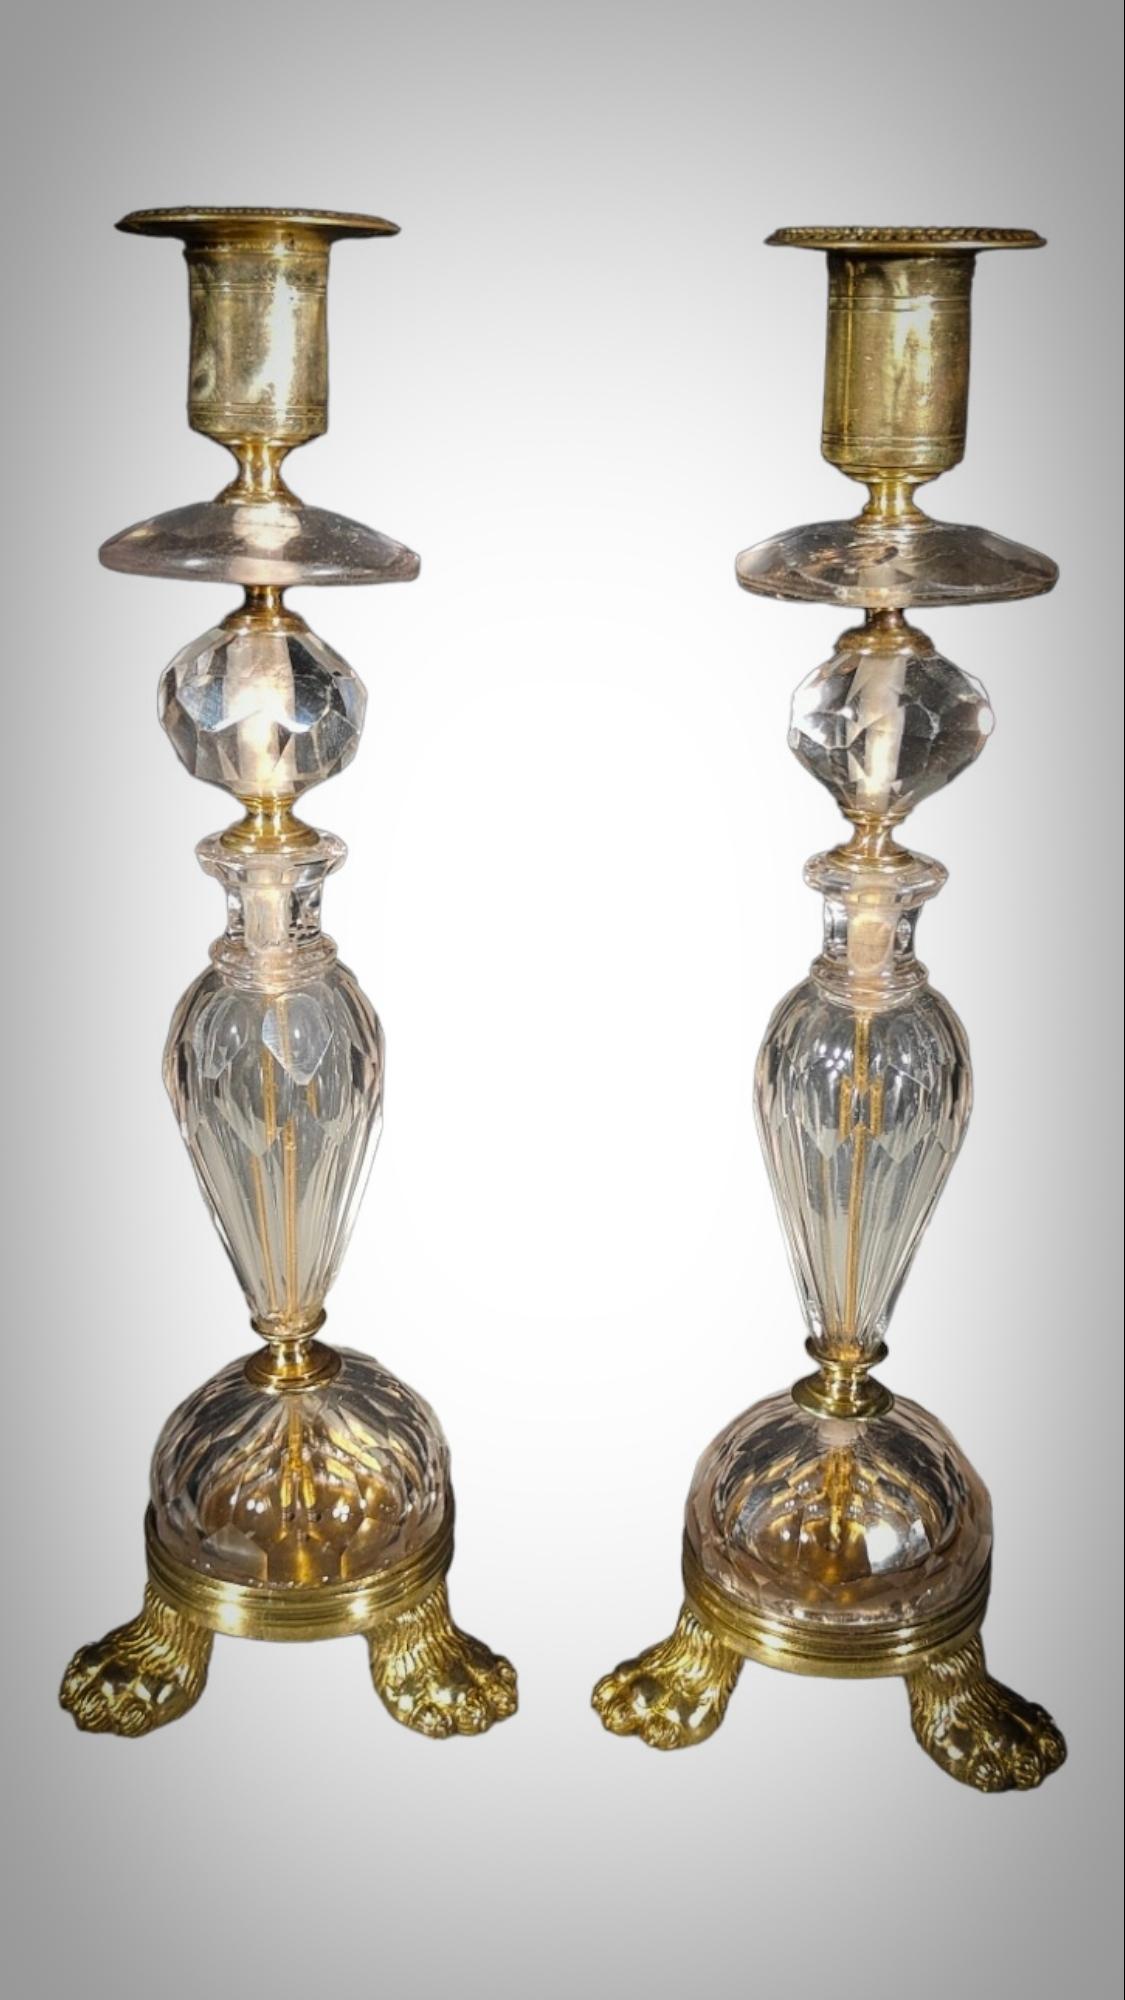 Ein Paar Kristall-Kerzenständer und vergoldete Bronzefassungen, spätes 17.
Kerzenständer aus geschliffenem und poliertem italienischem Kristall, abgestuft, facettiert, mit eingeschnittenen Messingdetails. 28x9x9cm